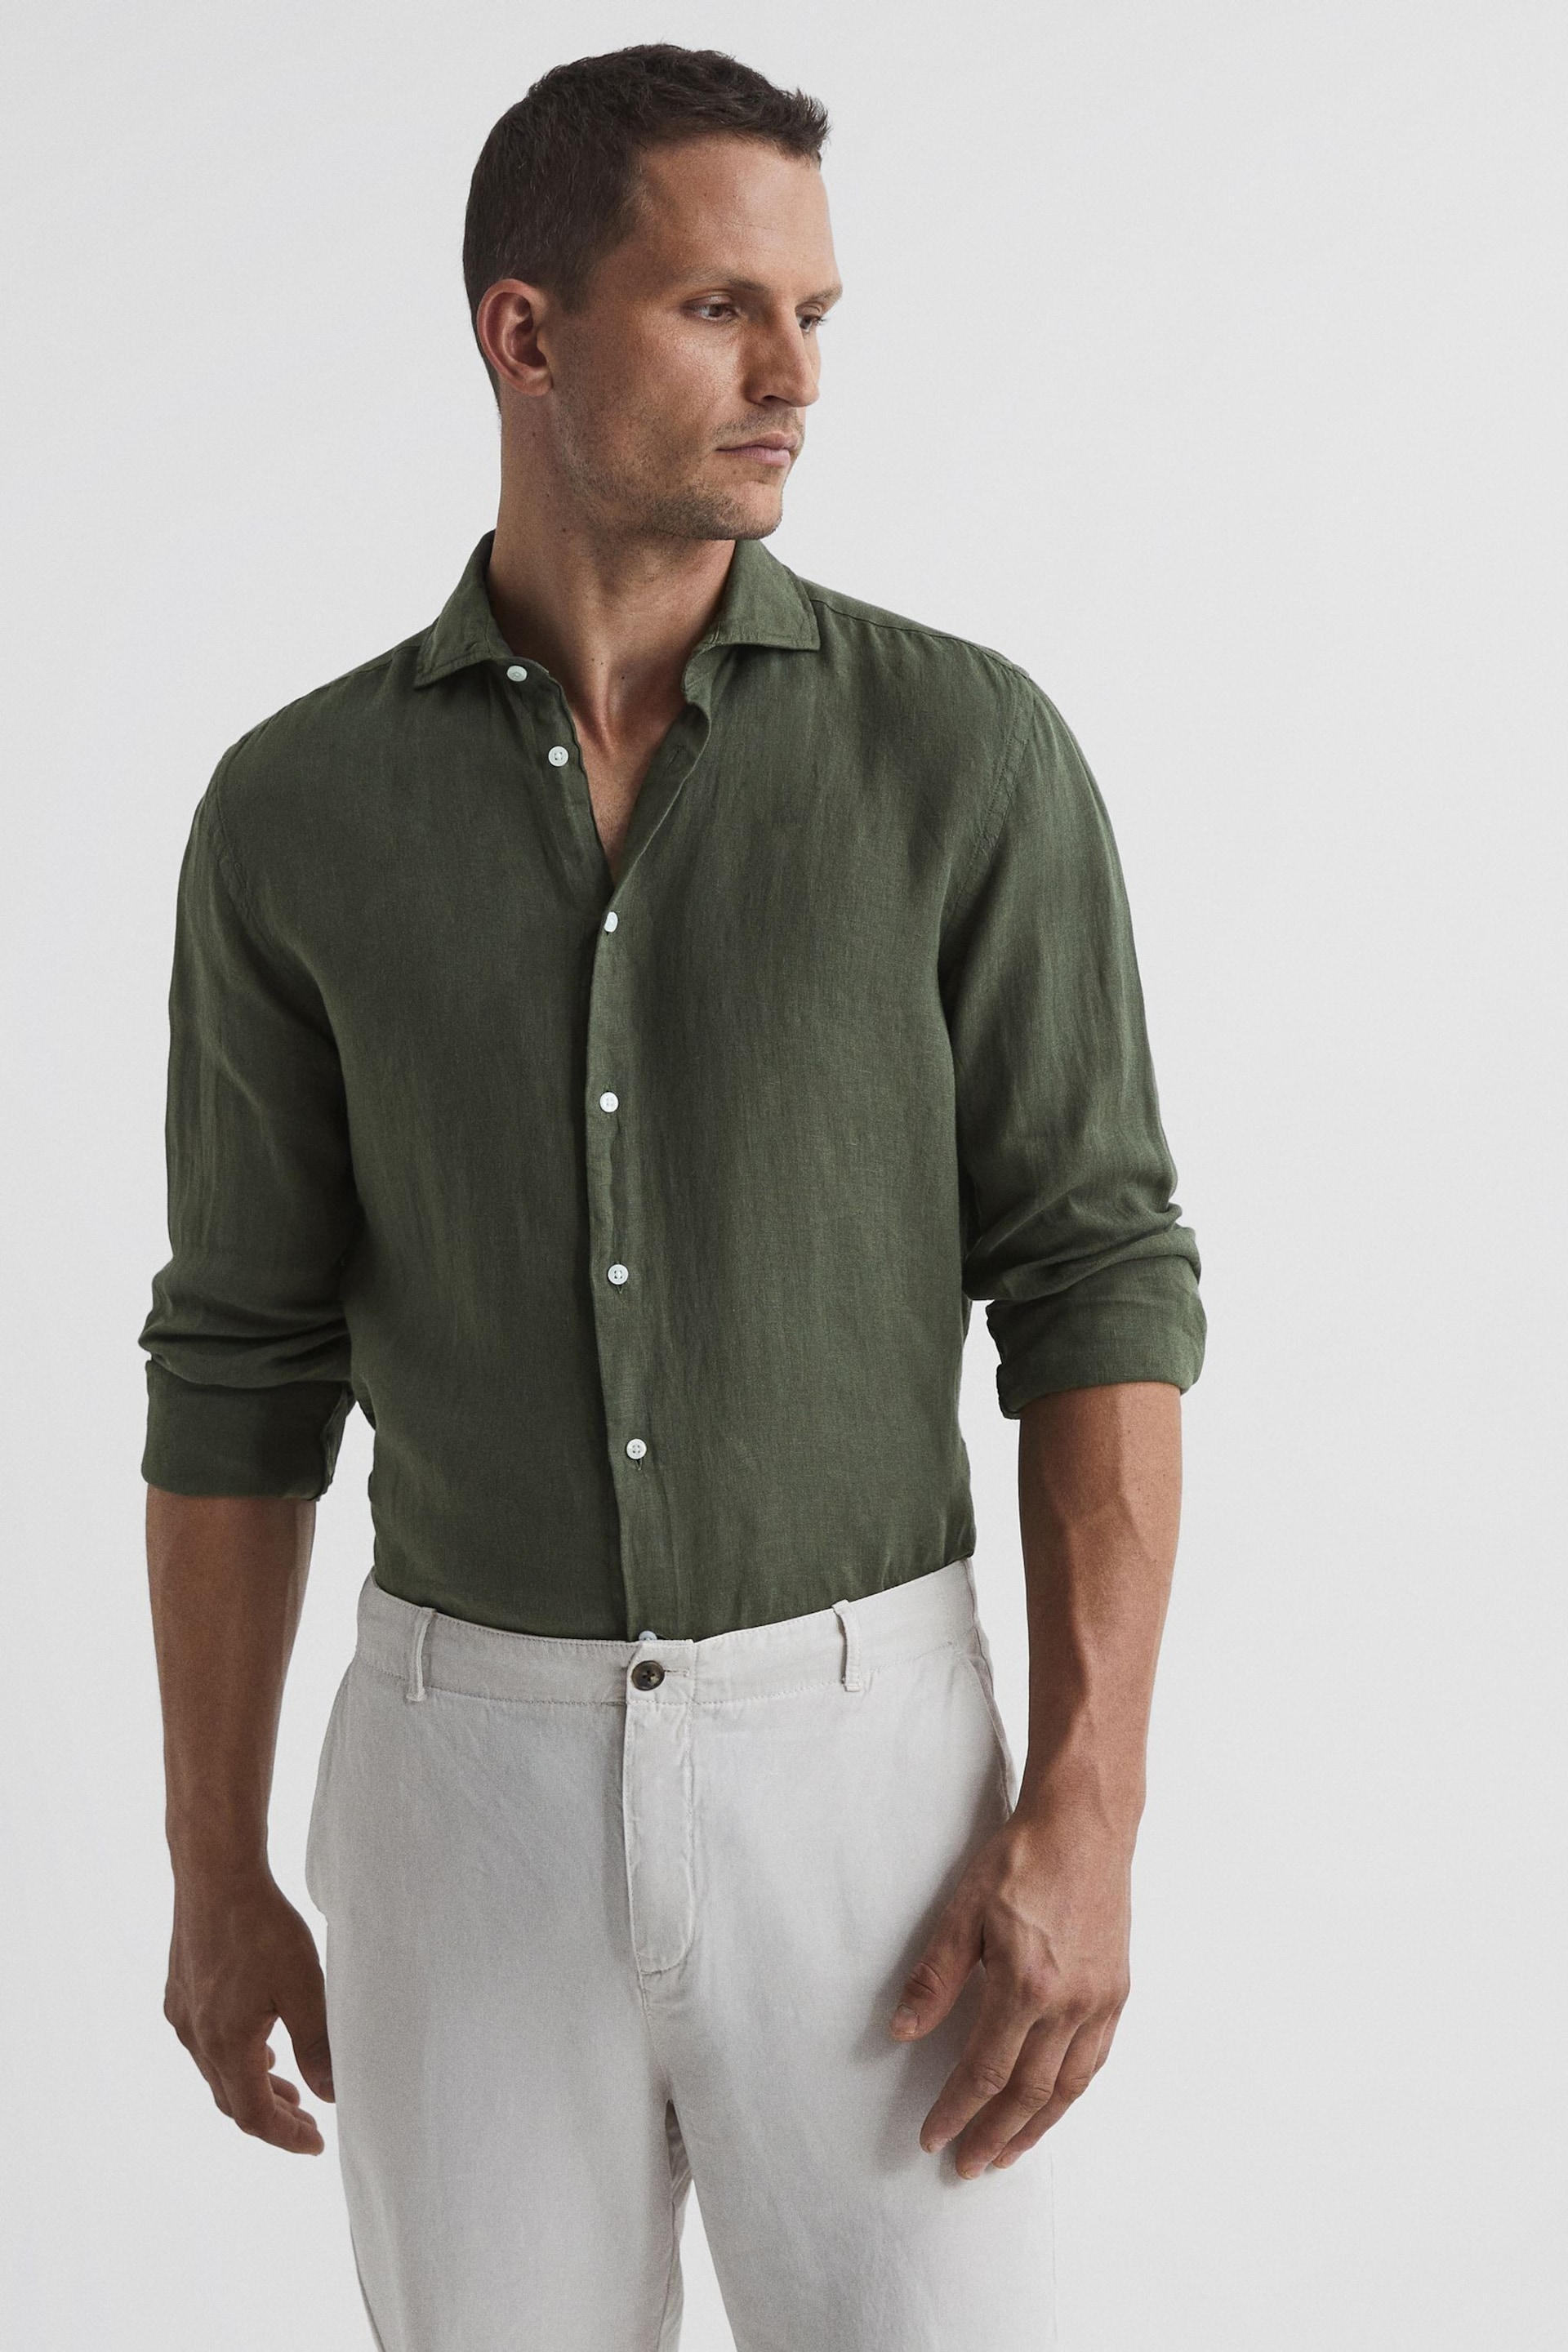 Reiss Olive Ruban Linen Button-Through Shirt - Image 1 of 2